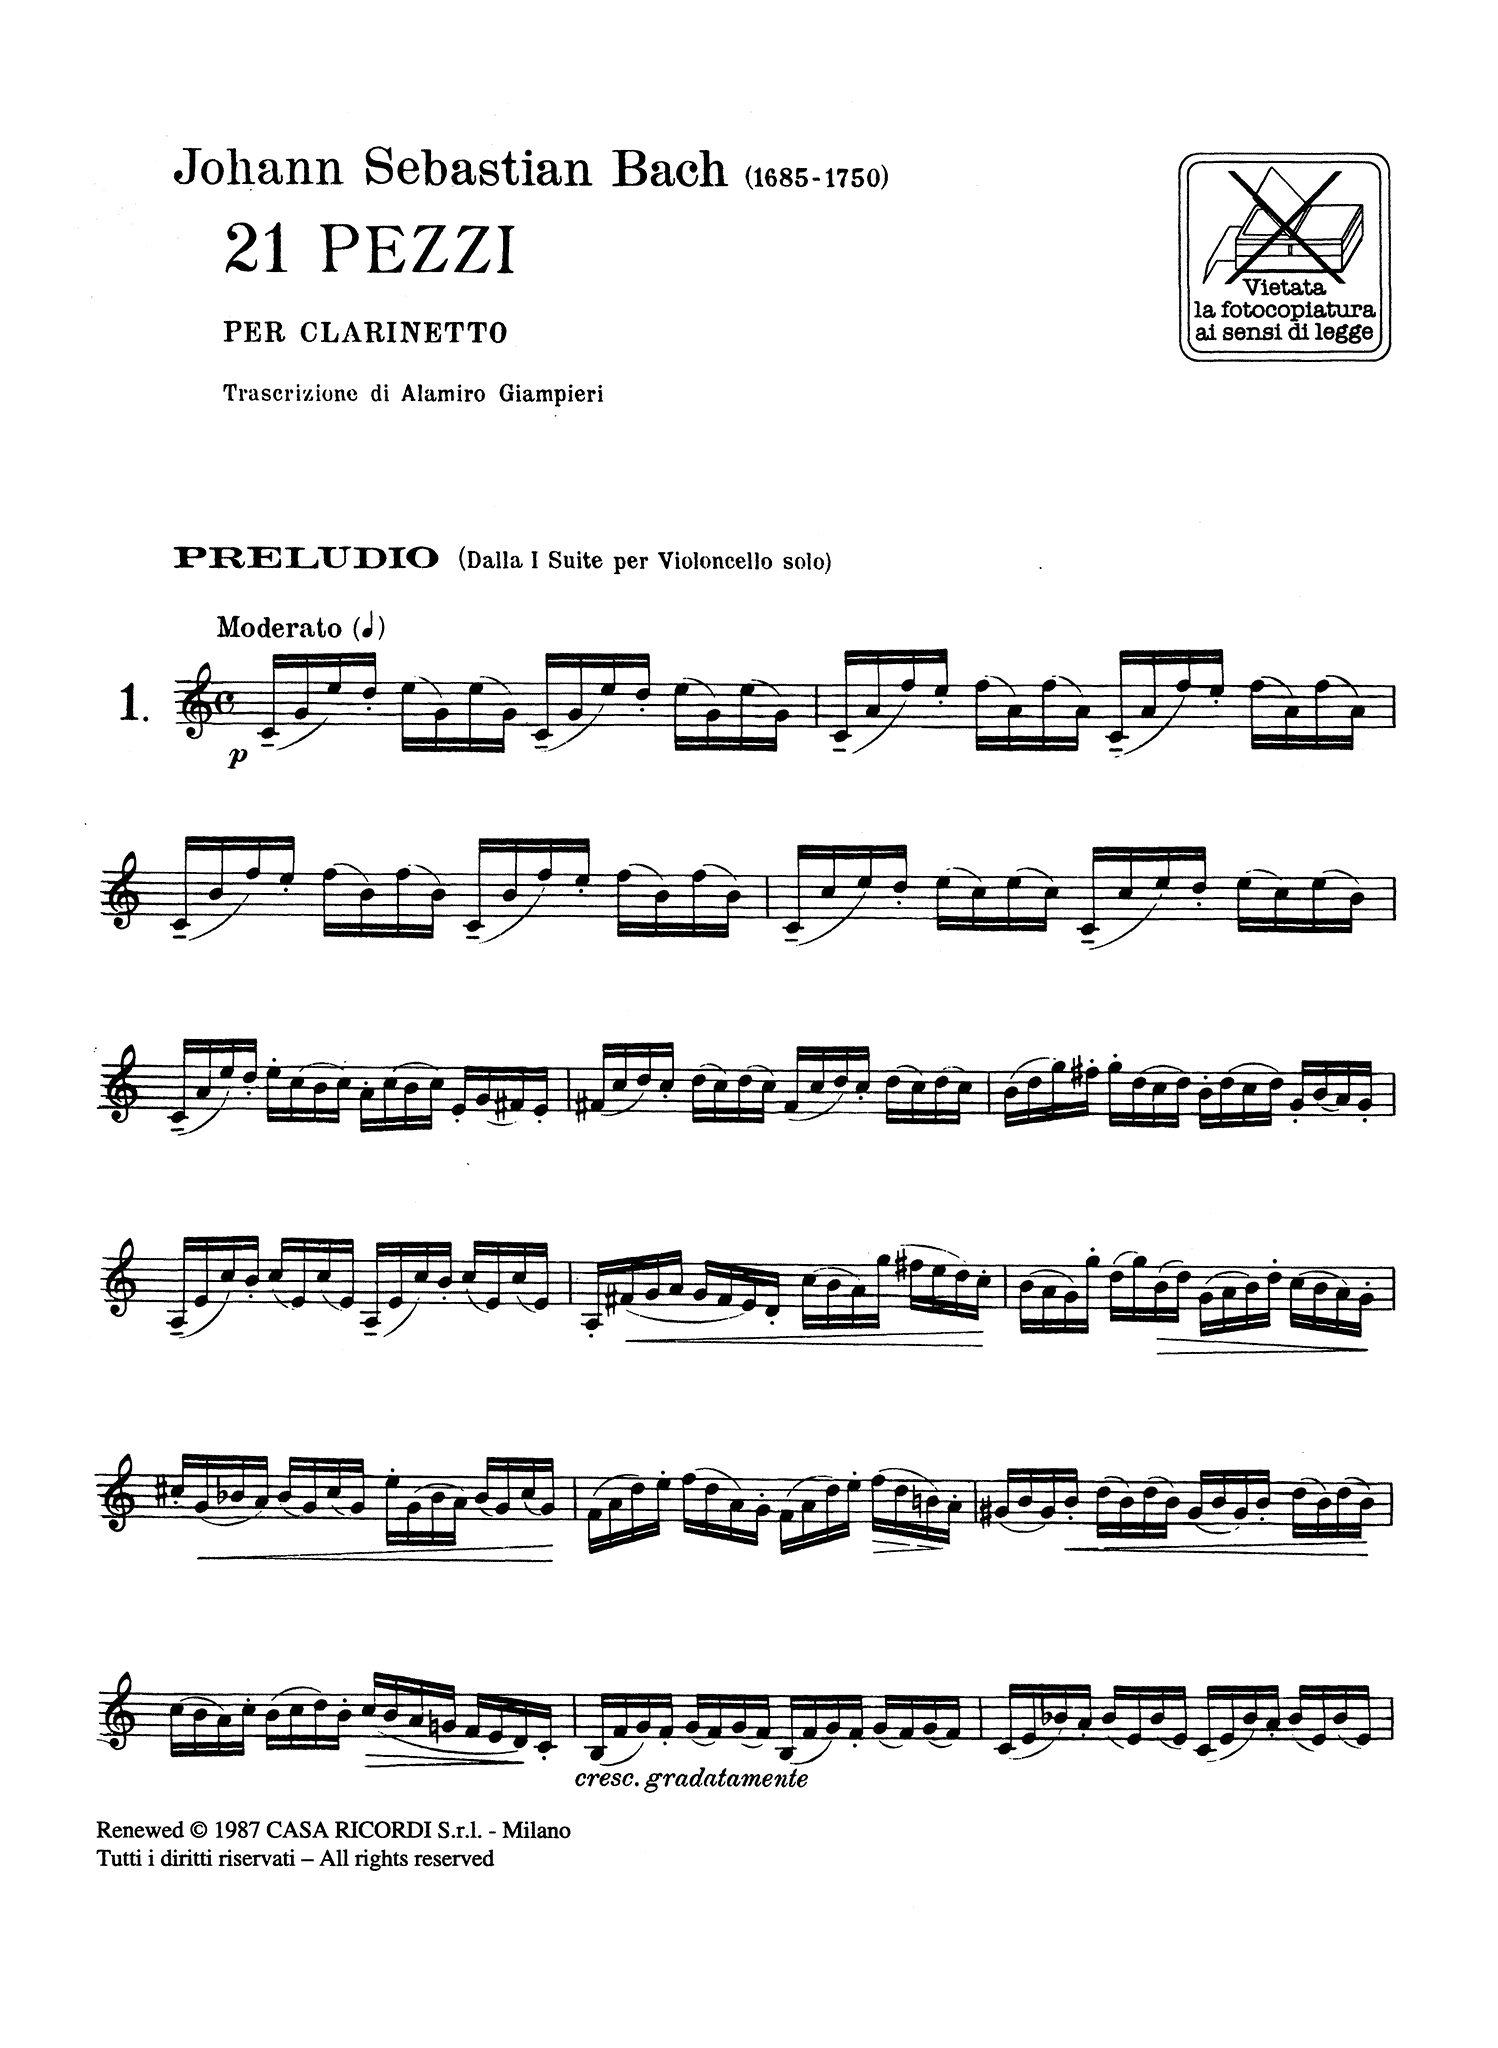 Bach 21 Pezzi arranged by Giampieri for clarinet unaccompanied page 1